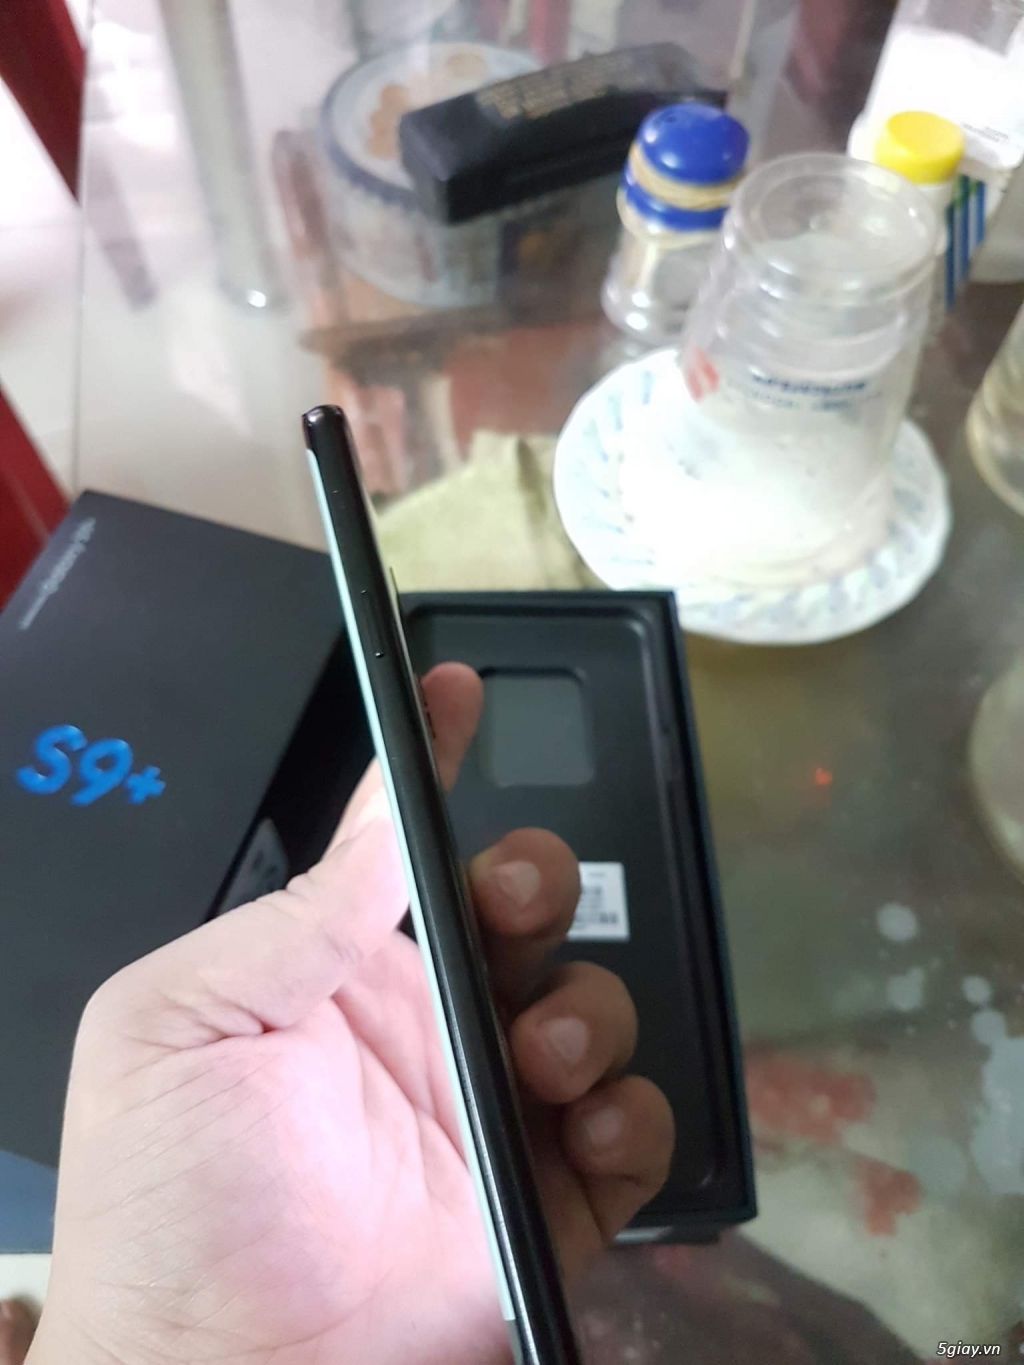 S9 plus đen 128gb 2 sim, Samsung Việt Nam bảo hành 5/2019 - 3